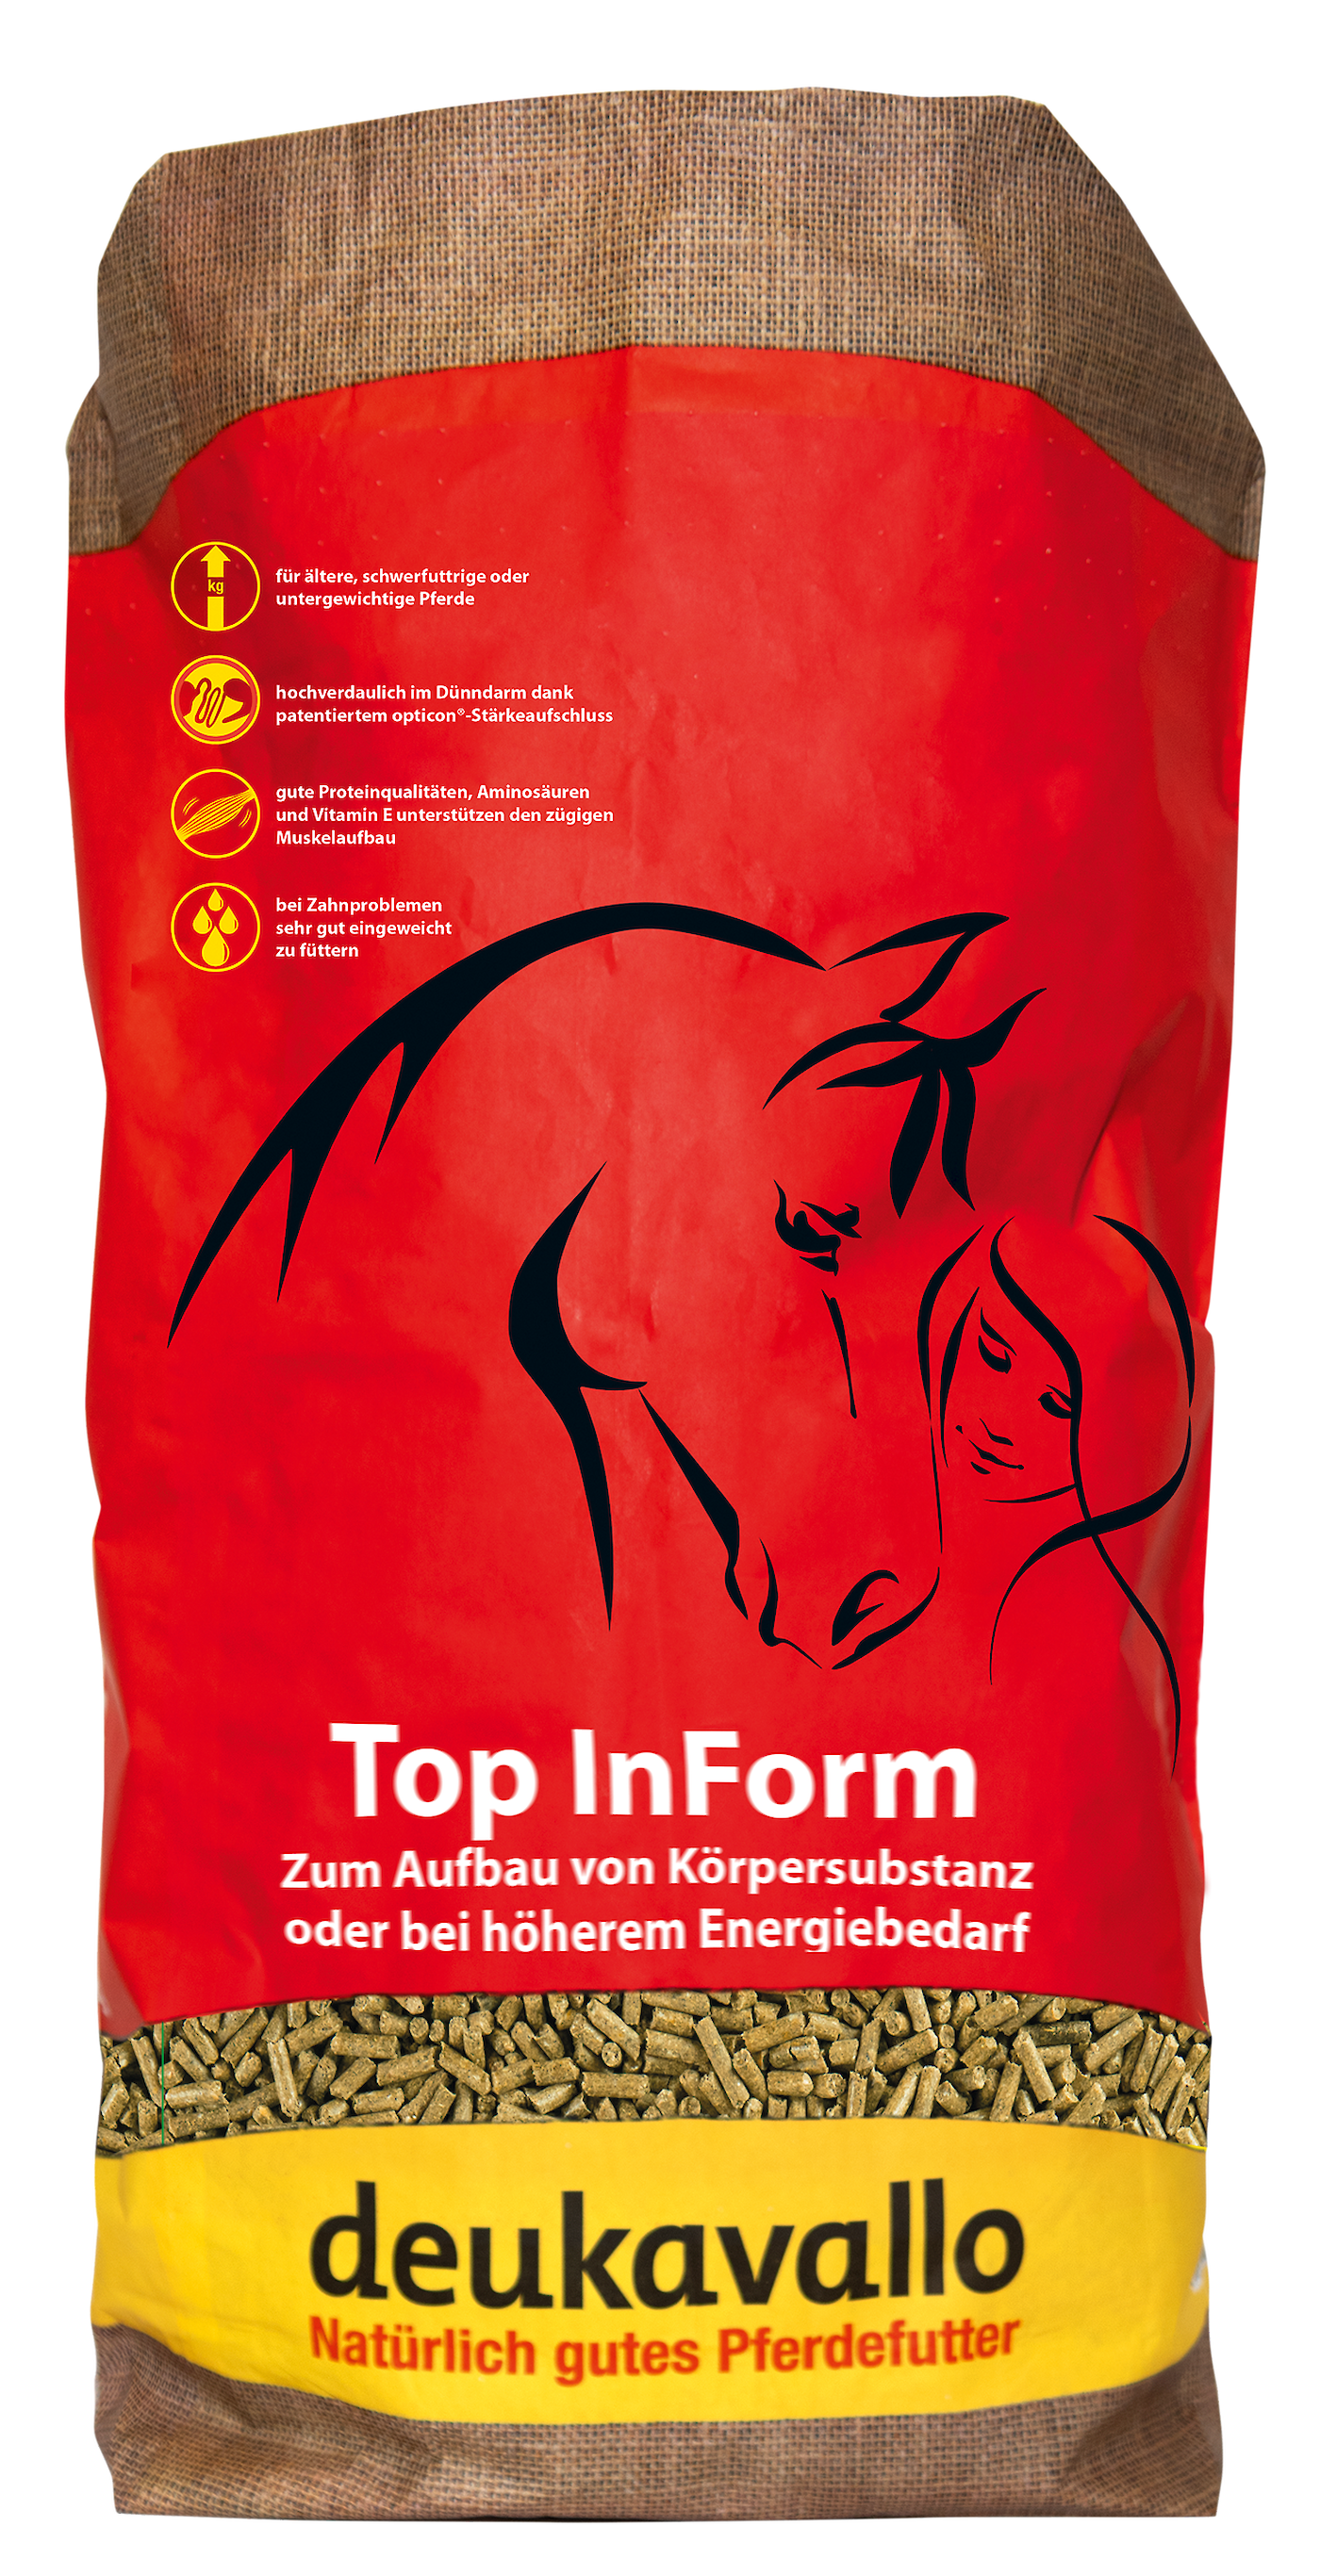 Moderne Krippenfutter wie deukavallo Top InForm ermöglichen eine einfache und energiereiche Fütterung (© Deutsche Tiernahrung Cremer).